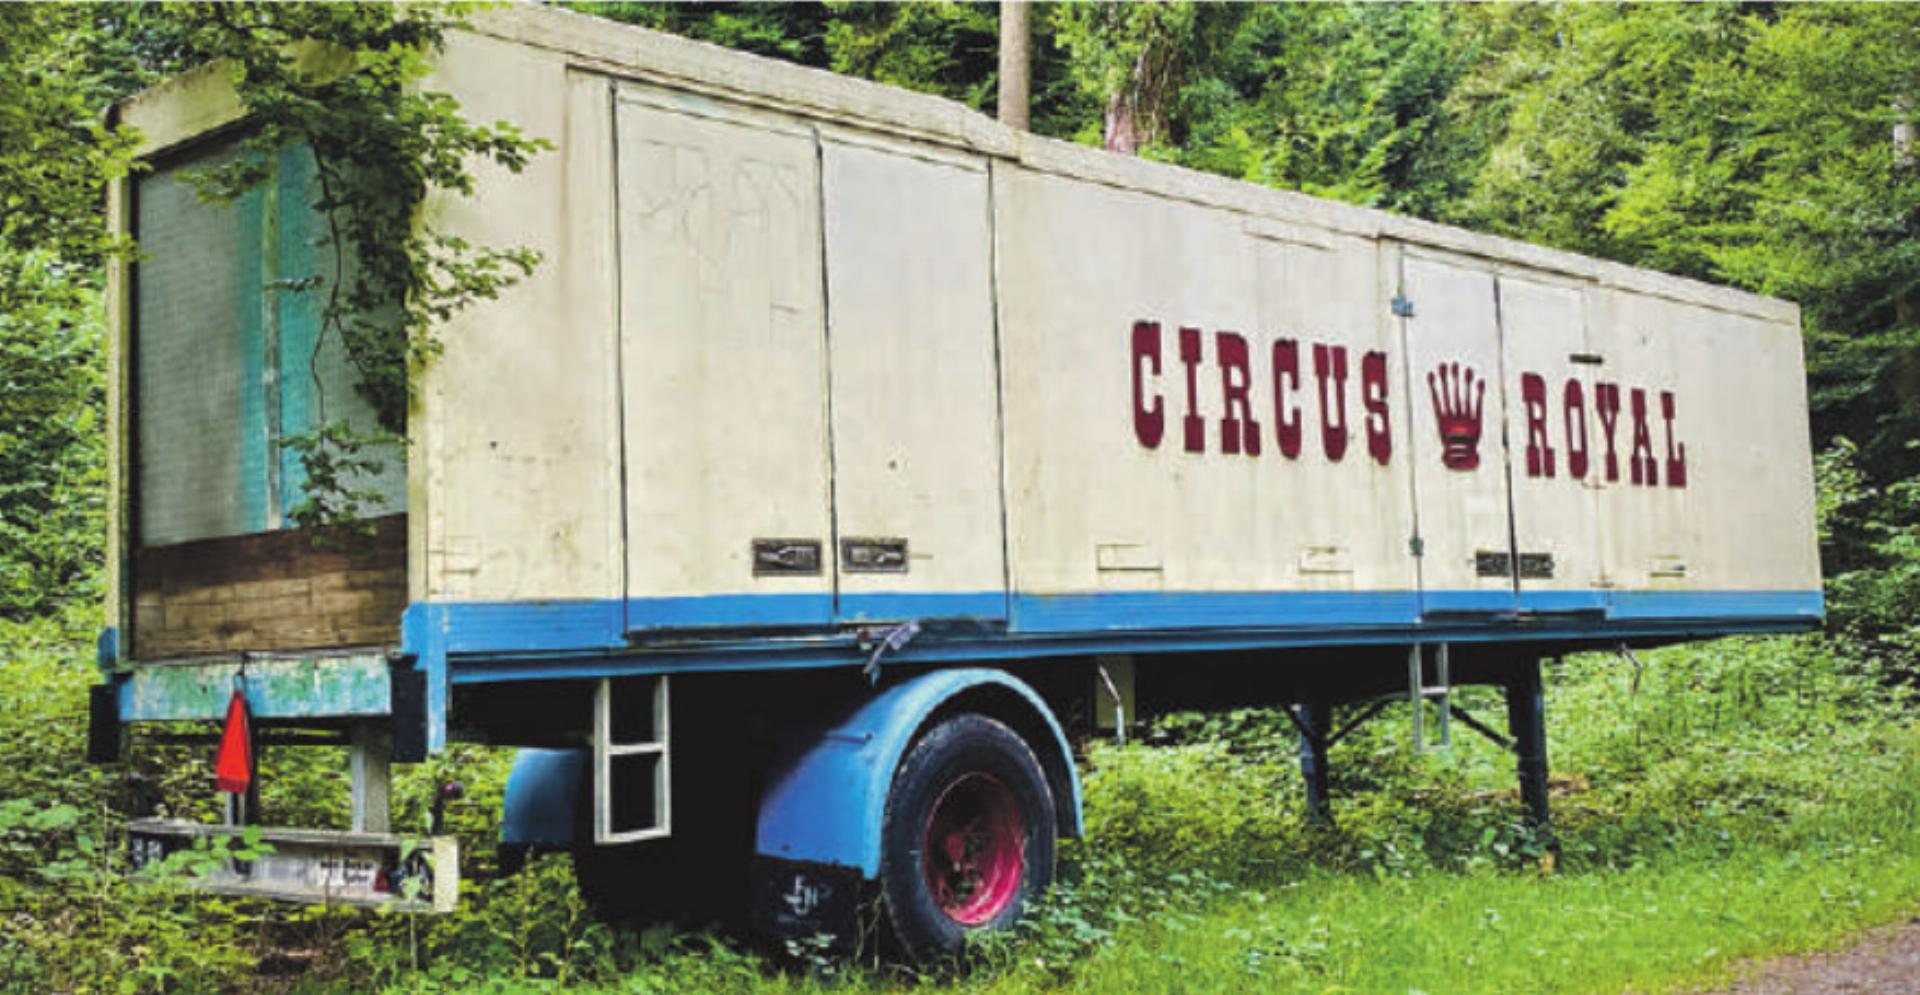 Anstatt Transportgefährt für Zirkusequipment bald ein Zuhause für Kunst und Künstler. Bild: Marianne Burgener